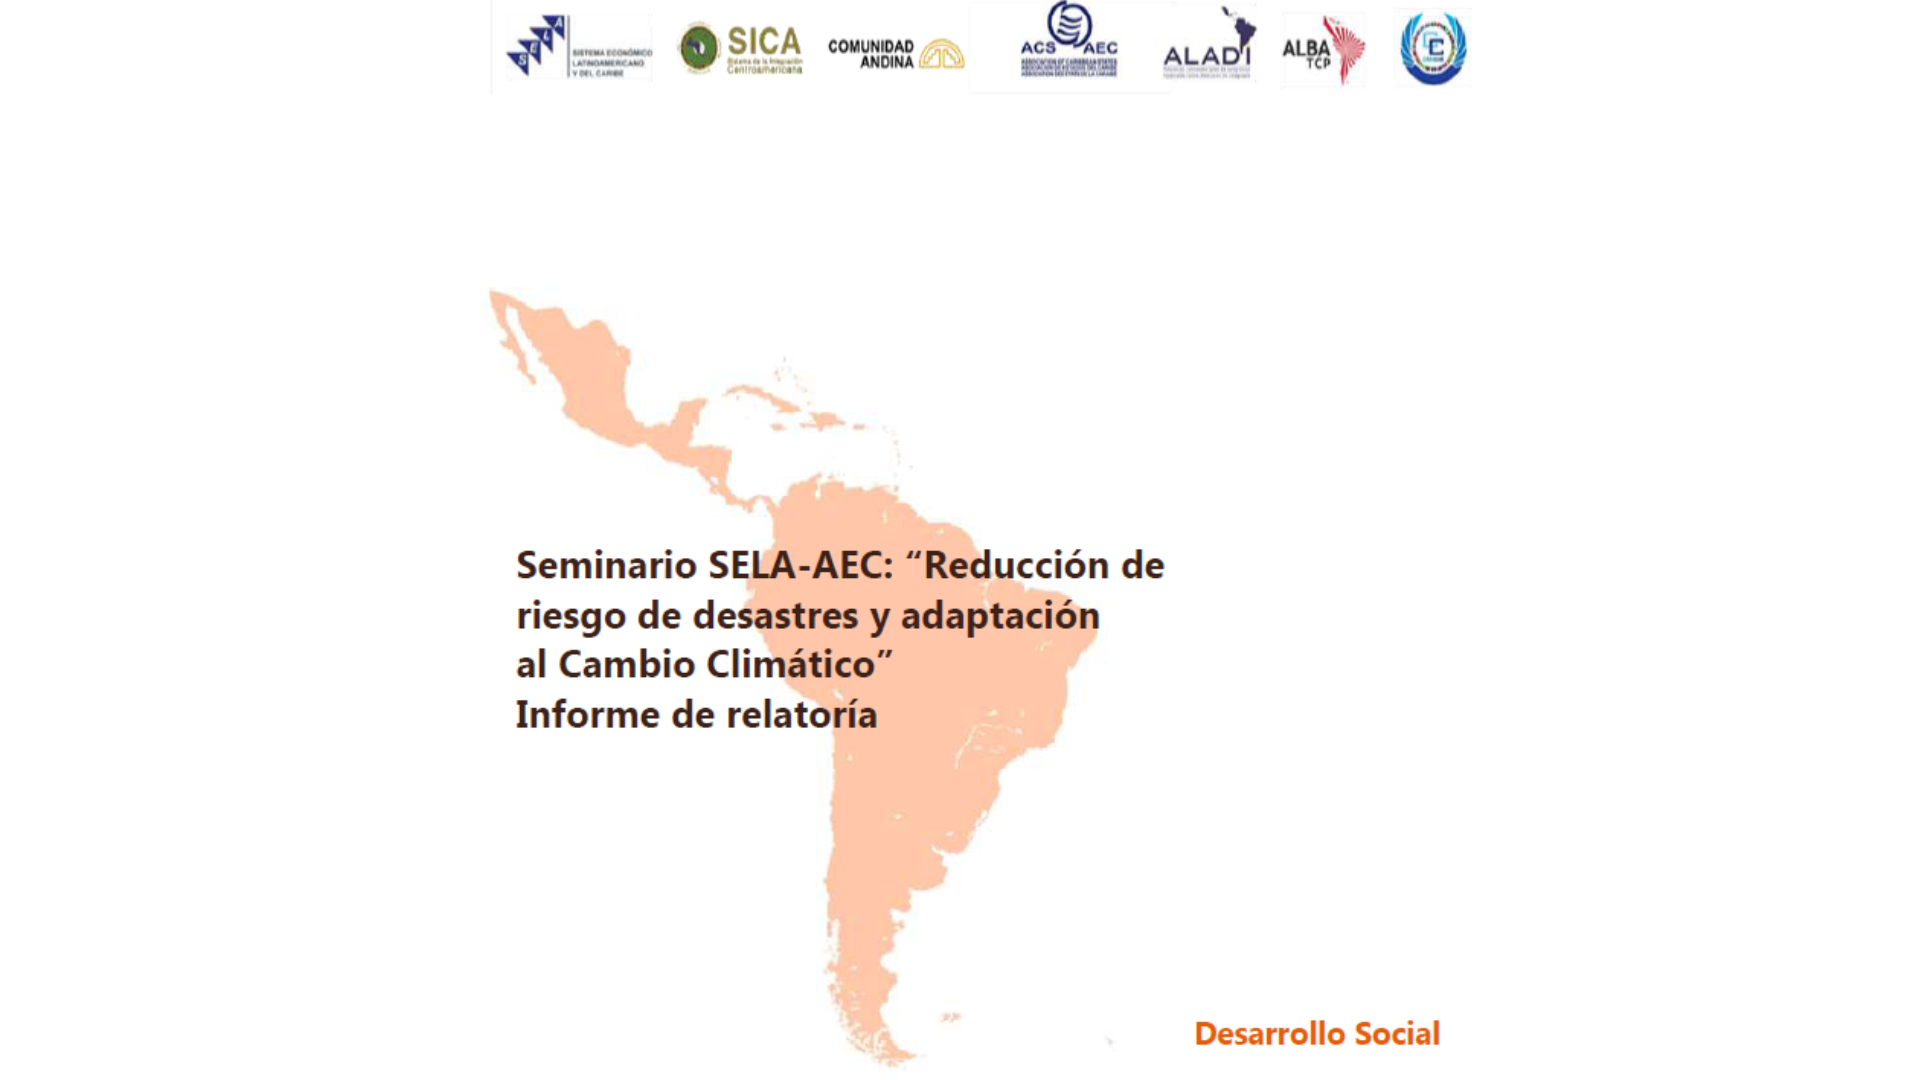 Seminario SELA-AEC: “Reducción de riesgo de desastres y cambio climático” - Informe de relatoría